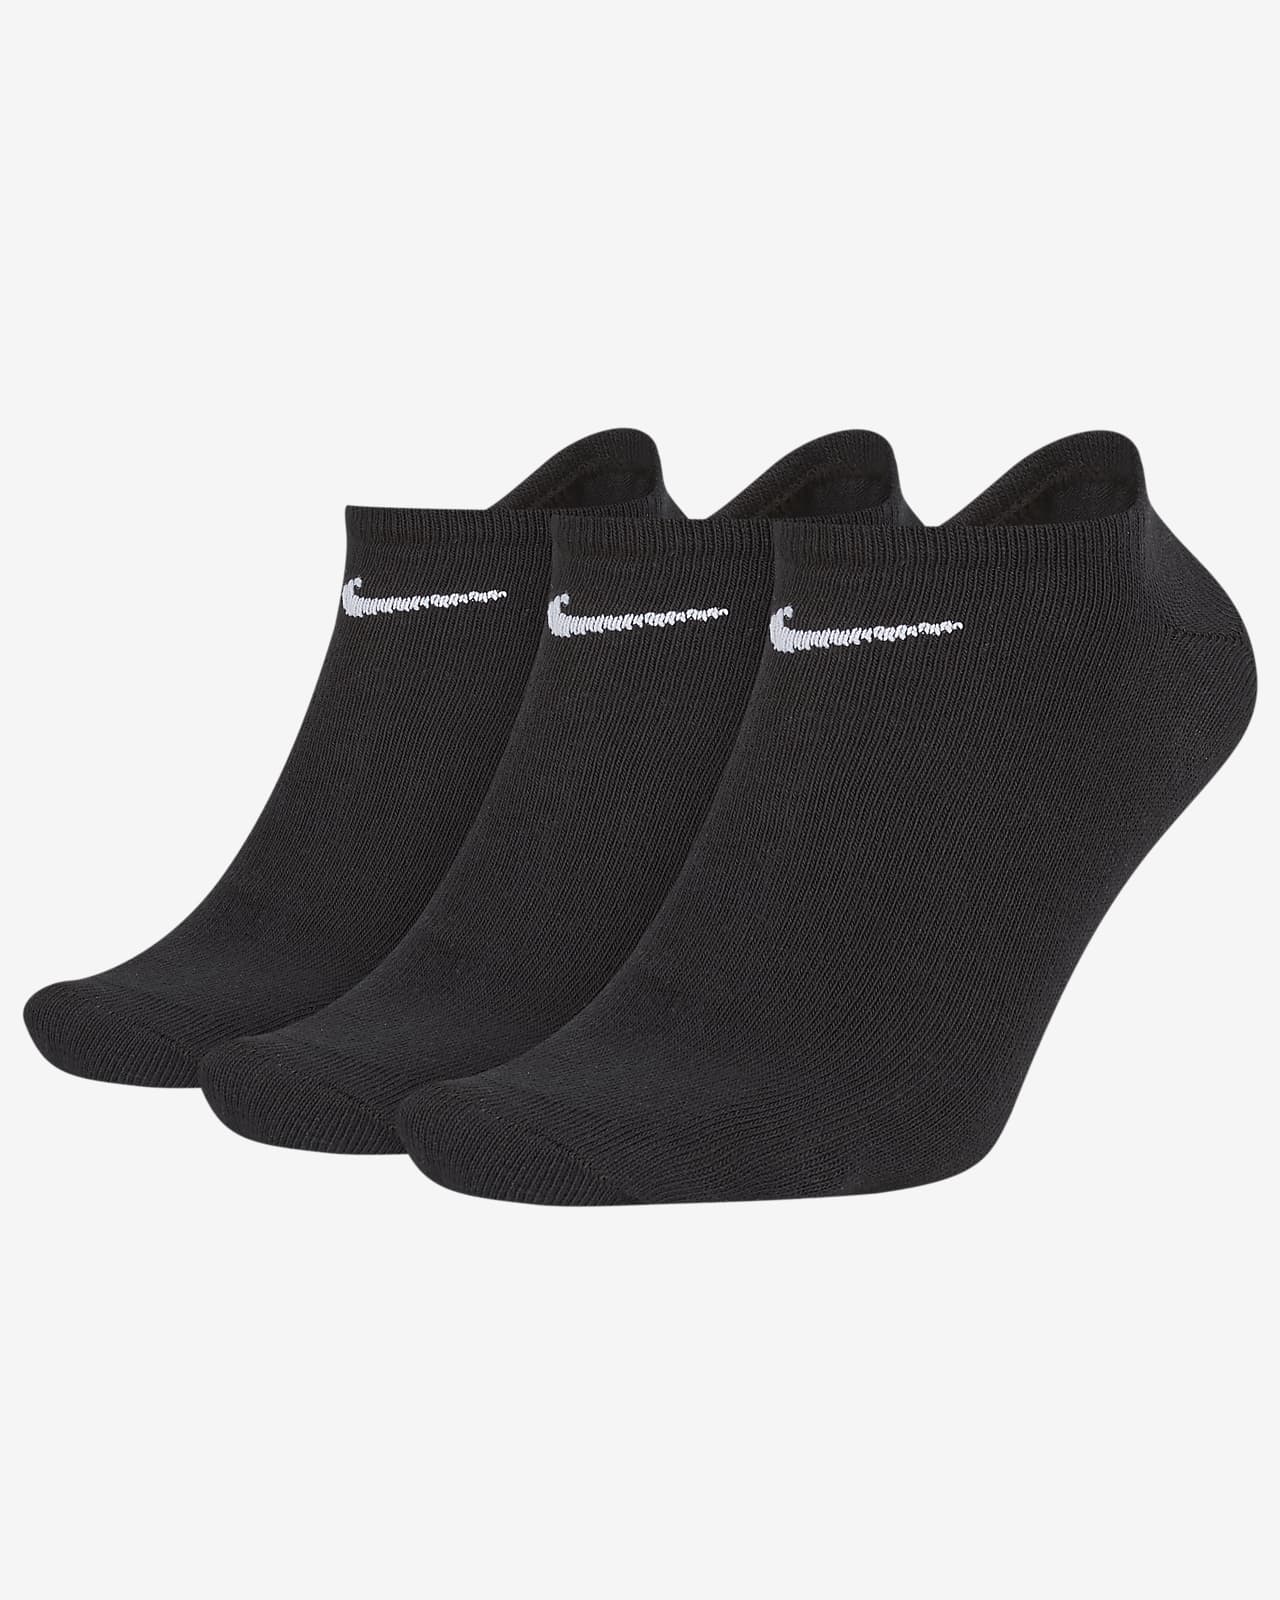 Χαμηλές κάλτσες προπόνησης Nike Lightweight (τρία ζευγάρια)